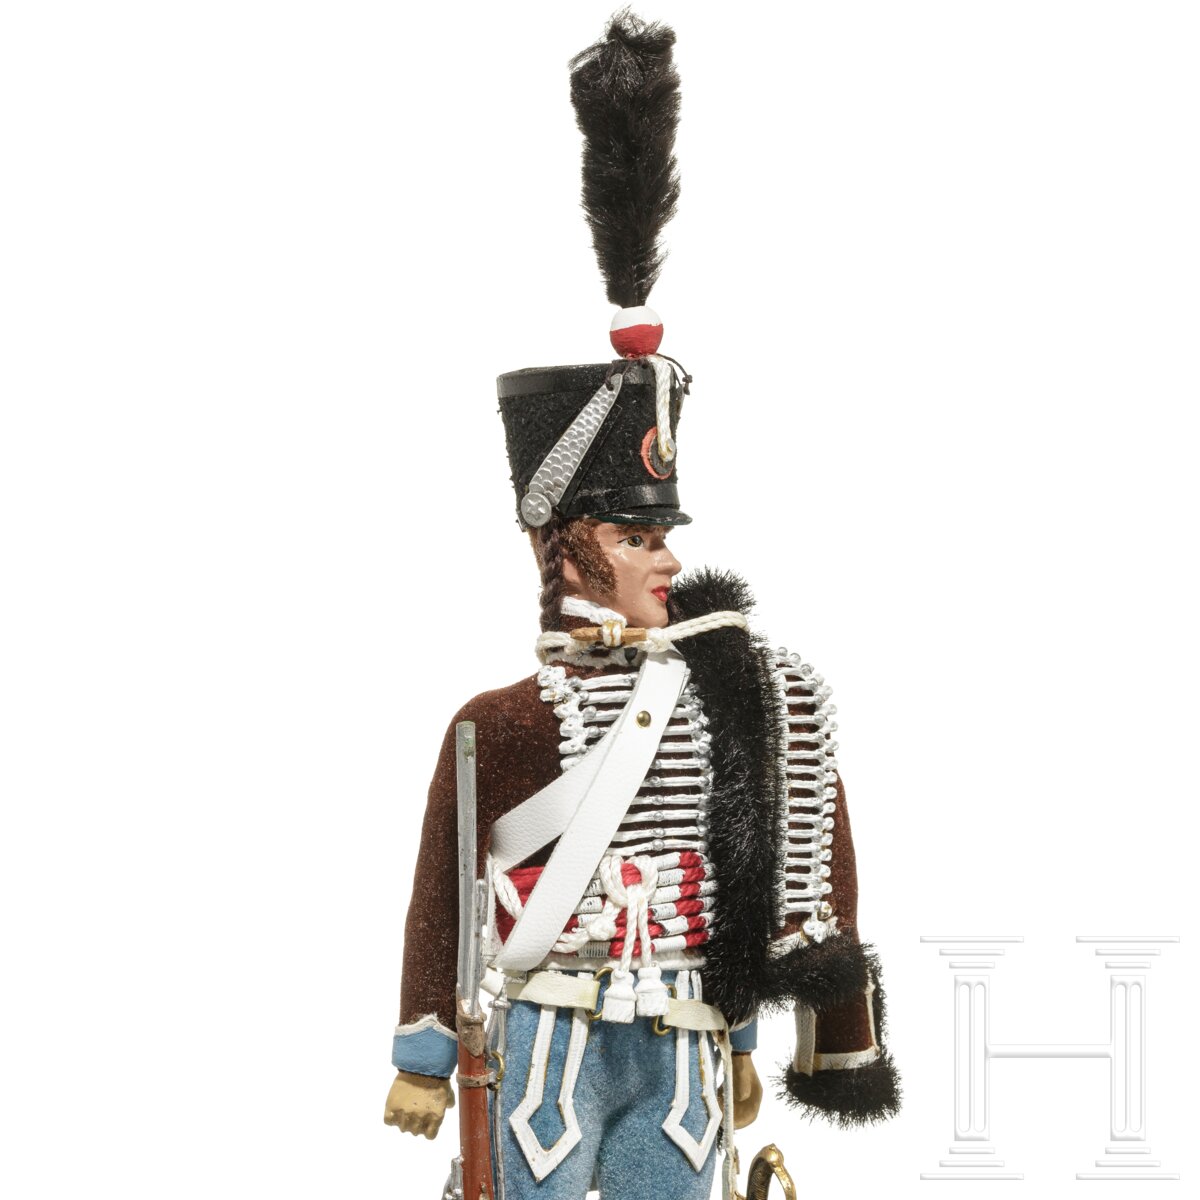 Husar um 1808 - Uniformfigur von Marcel Riffet, 20. Jhdt. - Image 6 of 6